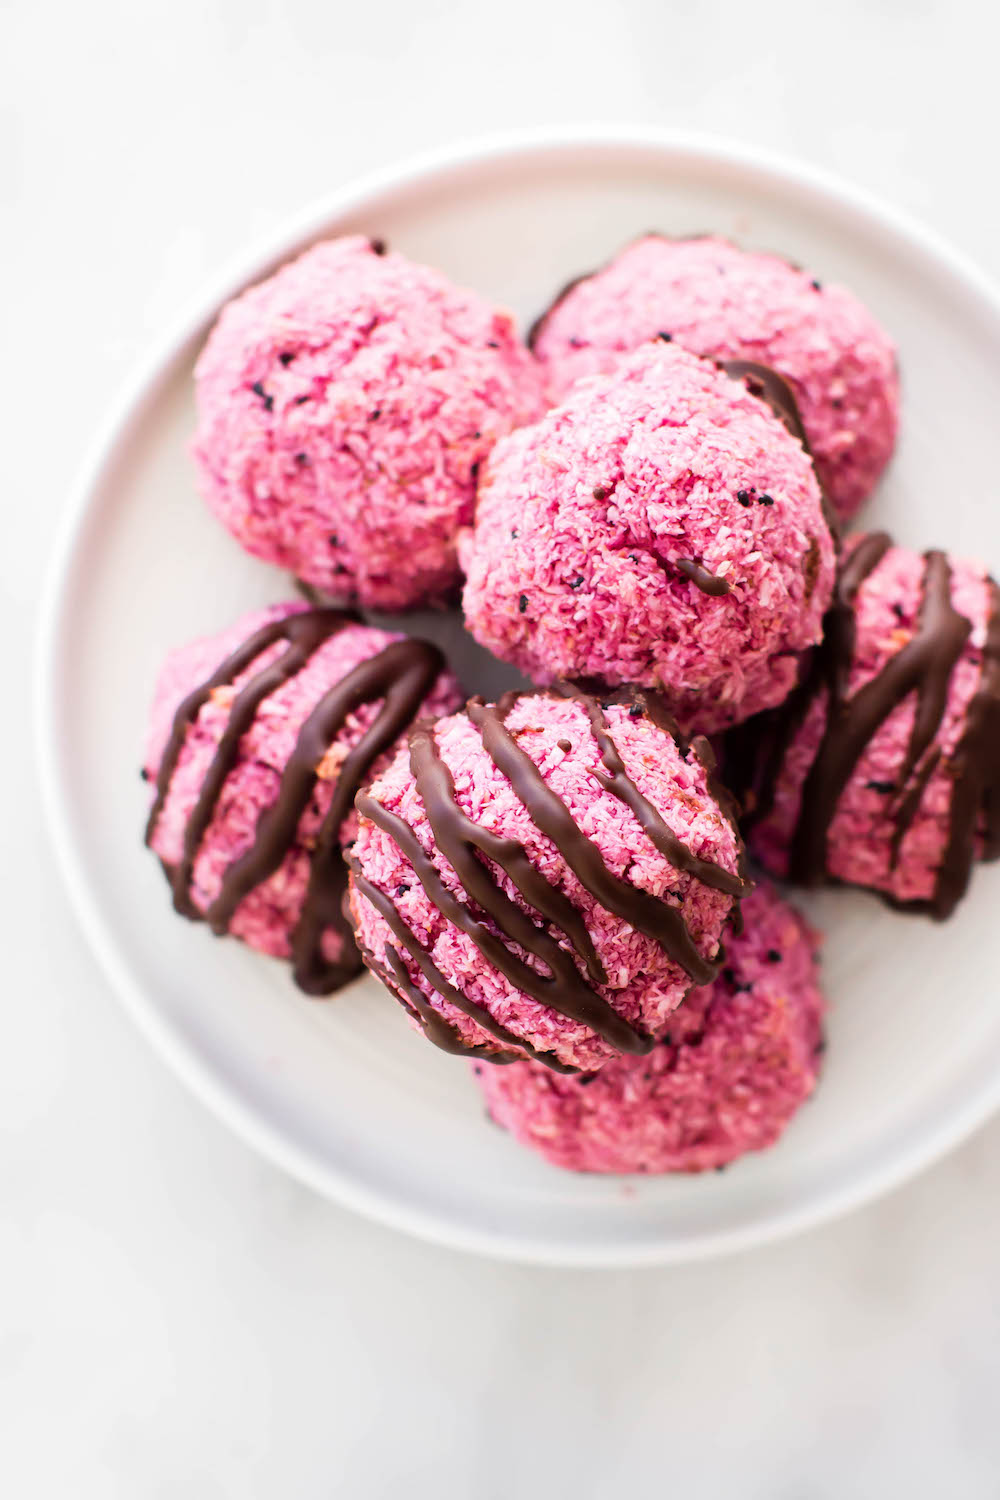 Pitaya Pink Coconut Macaroons {vegan, gluten-free, oil-free}